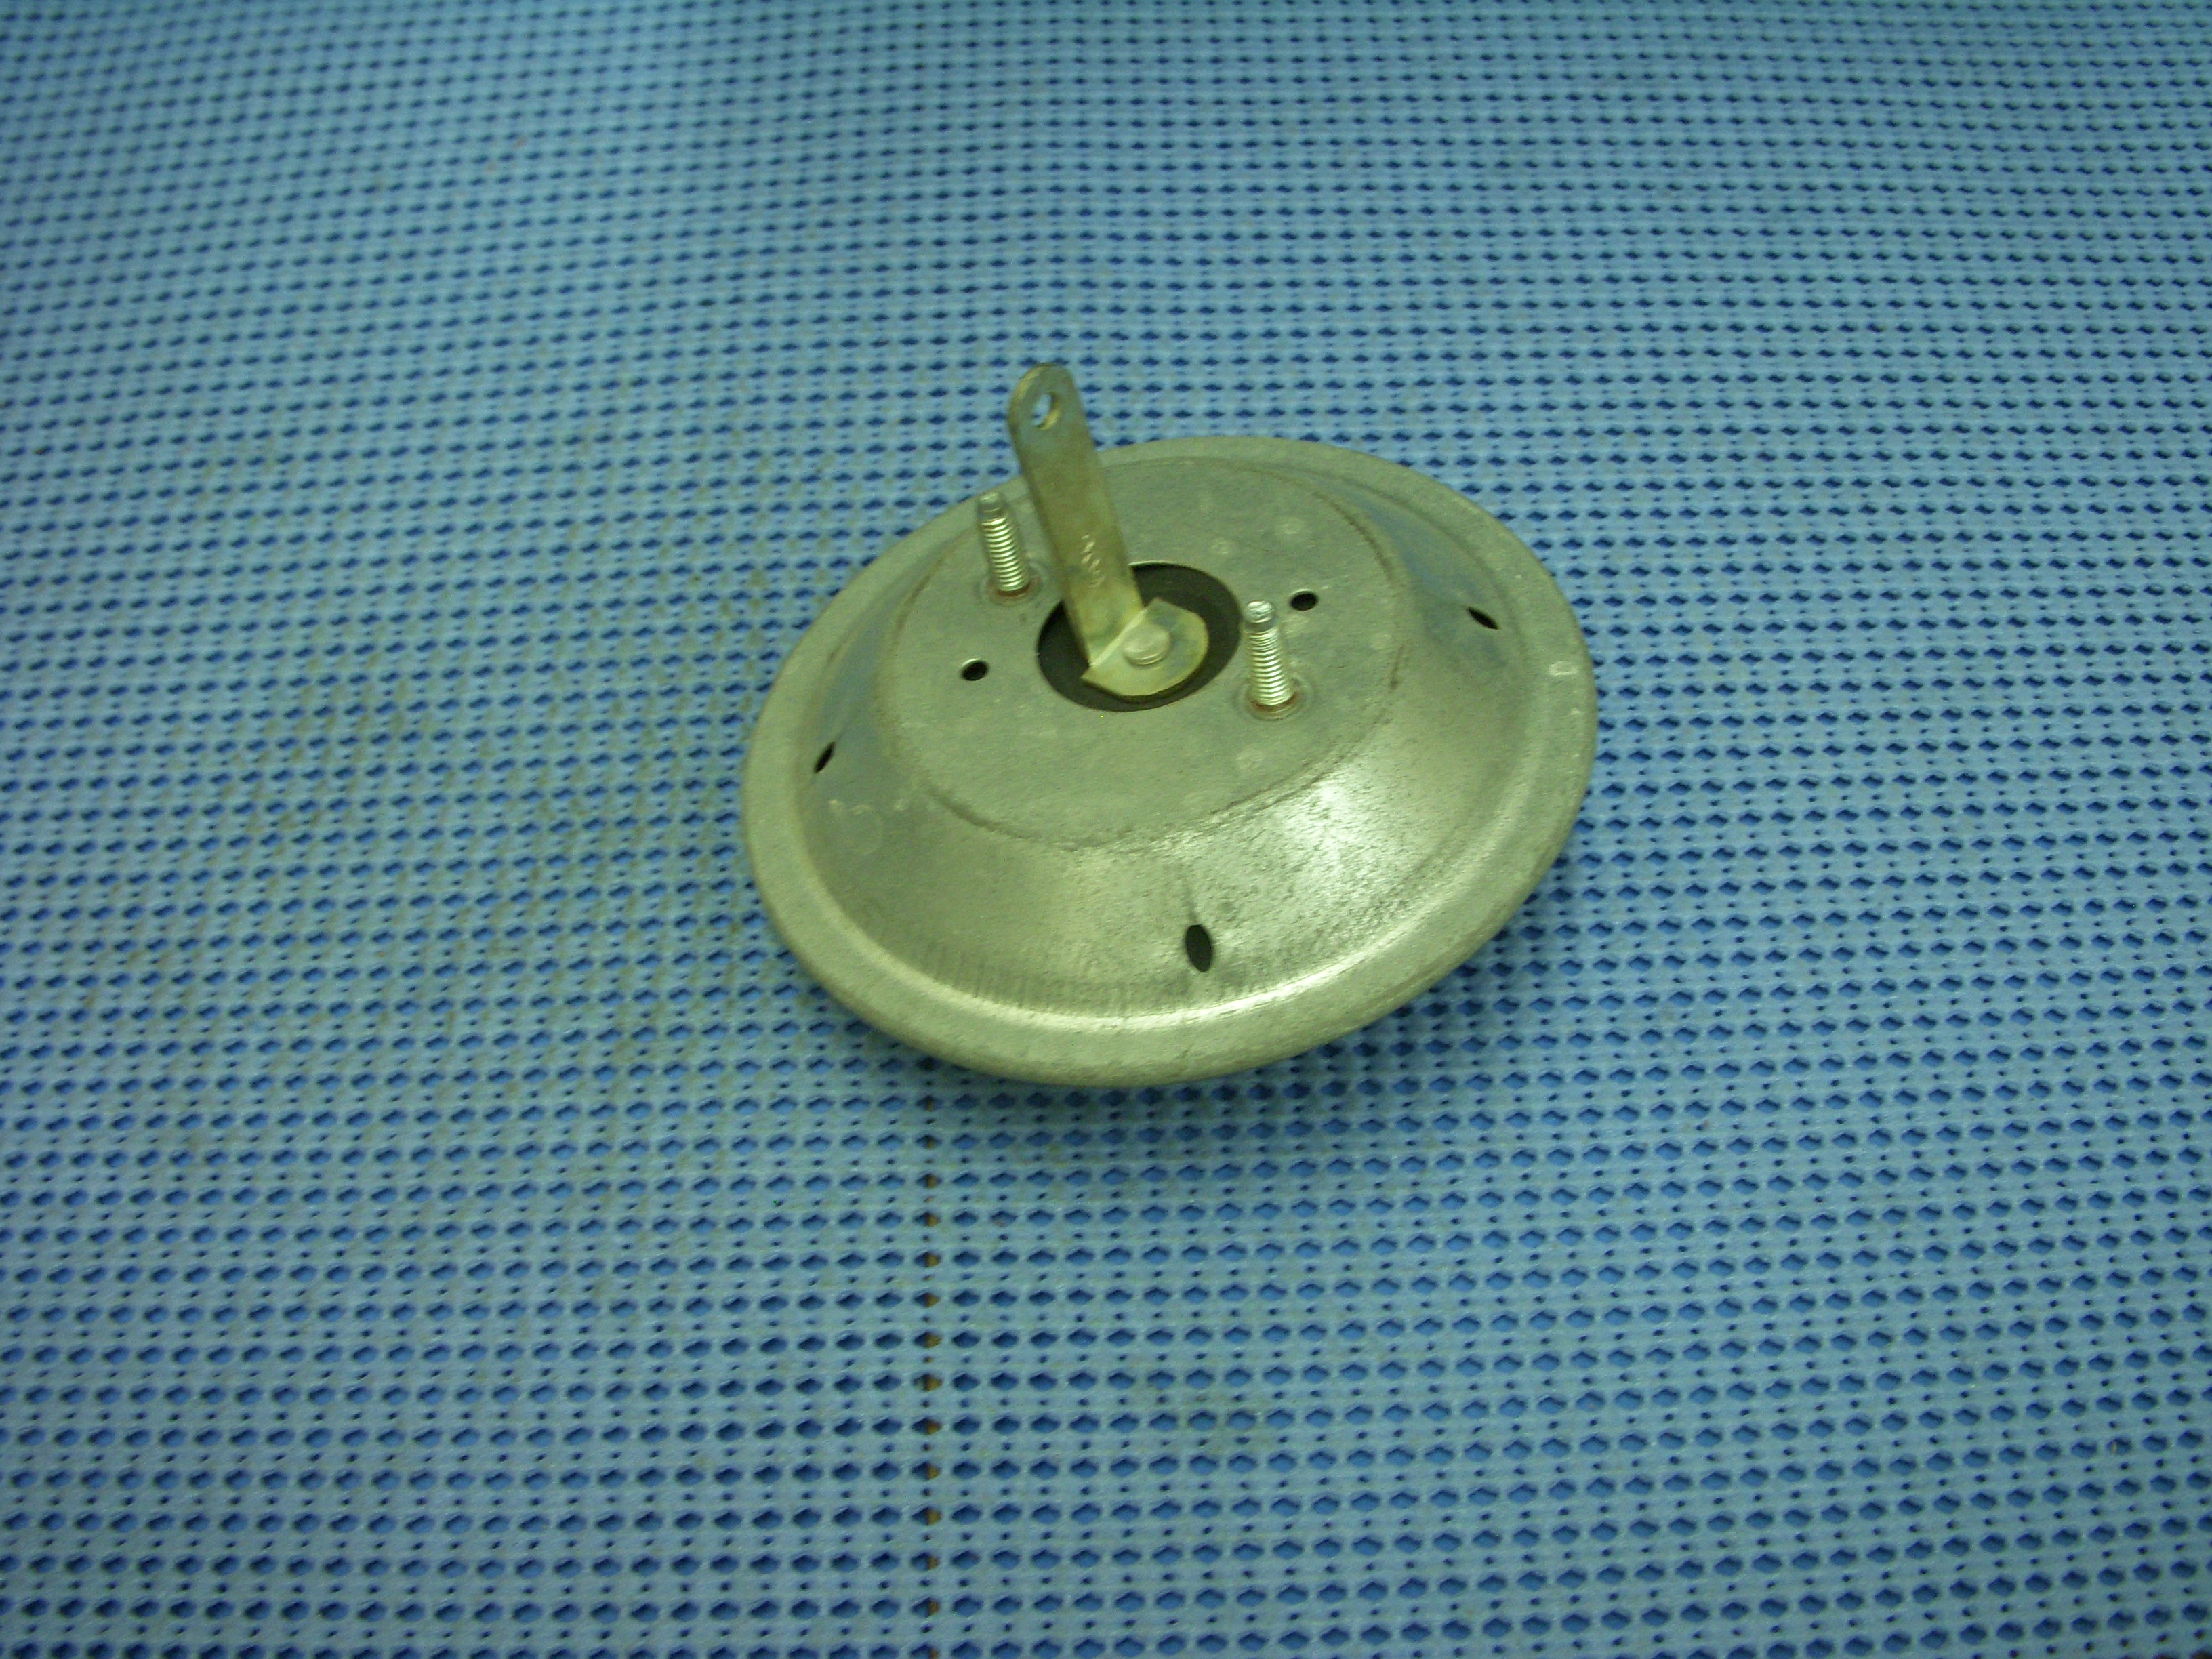 1965 - 1971 GM Vacuum Diaphragm NOS # 1998909